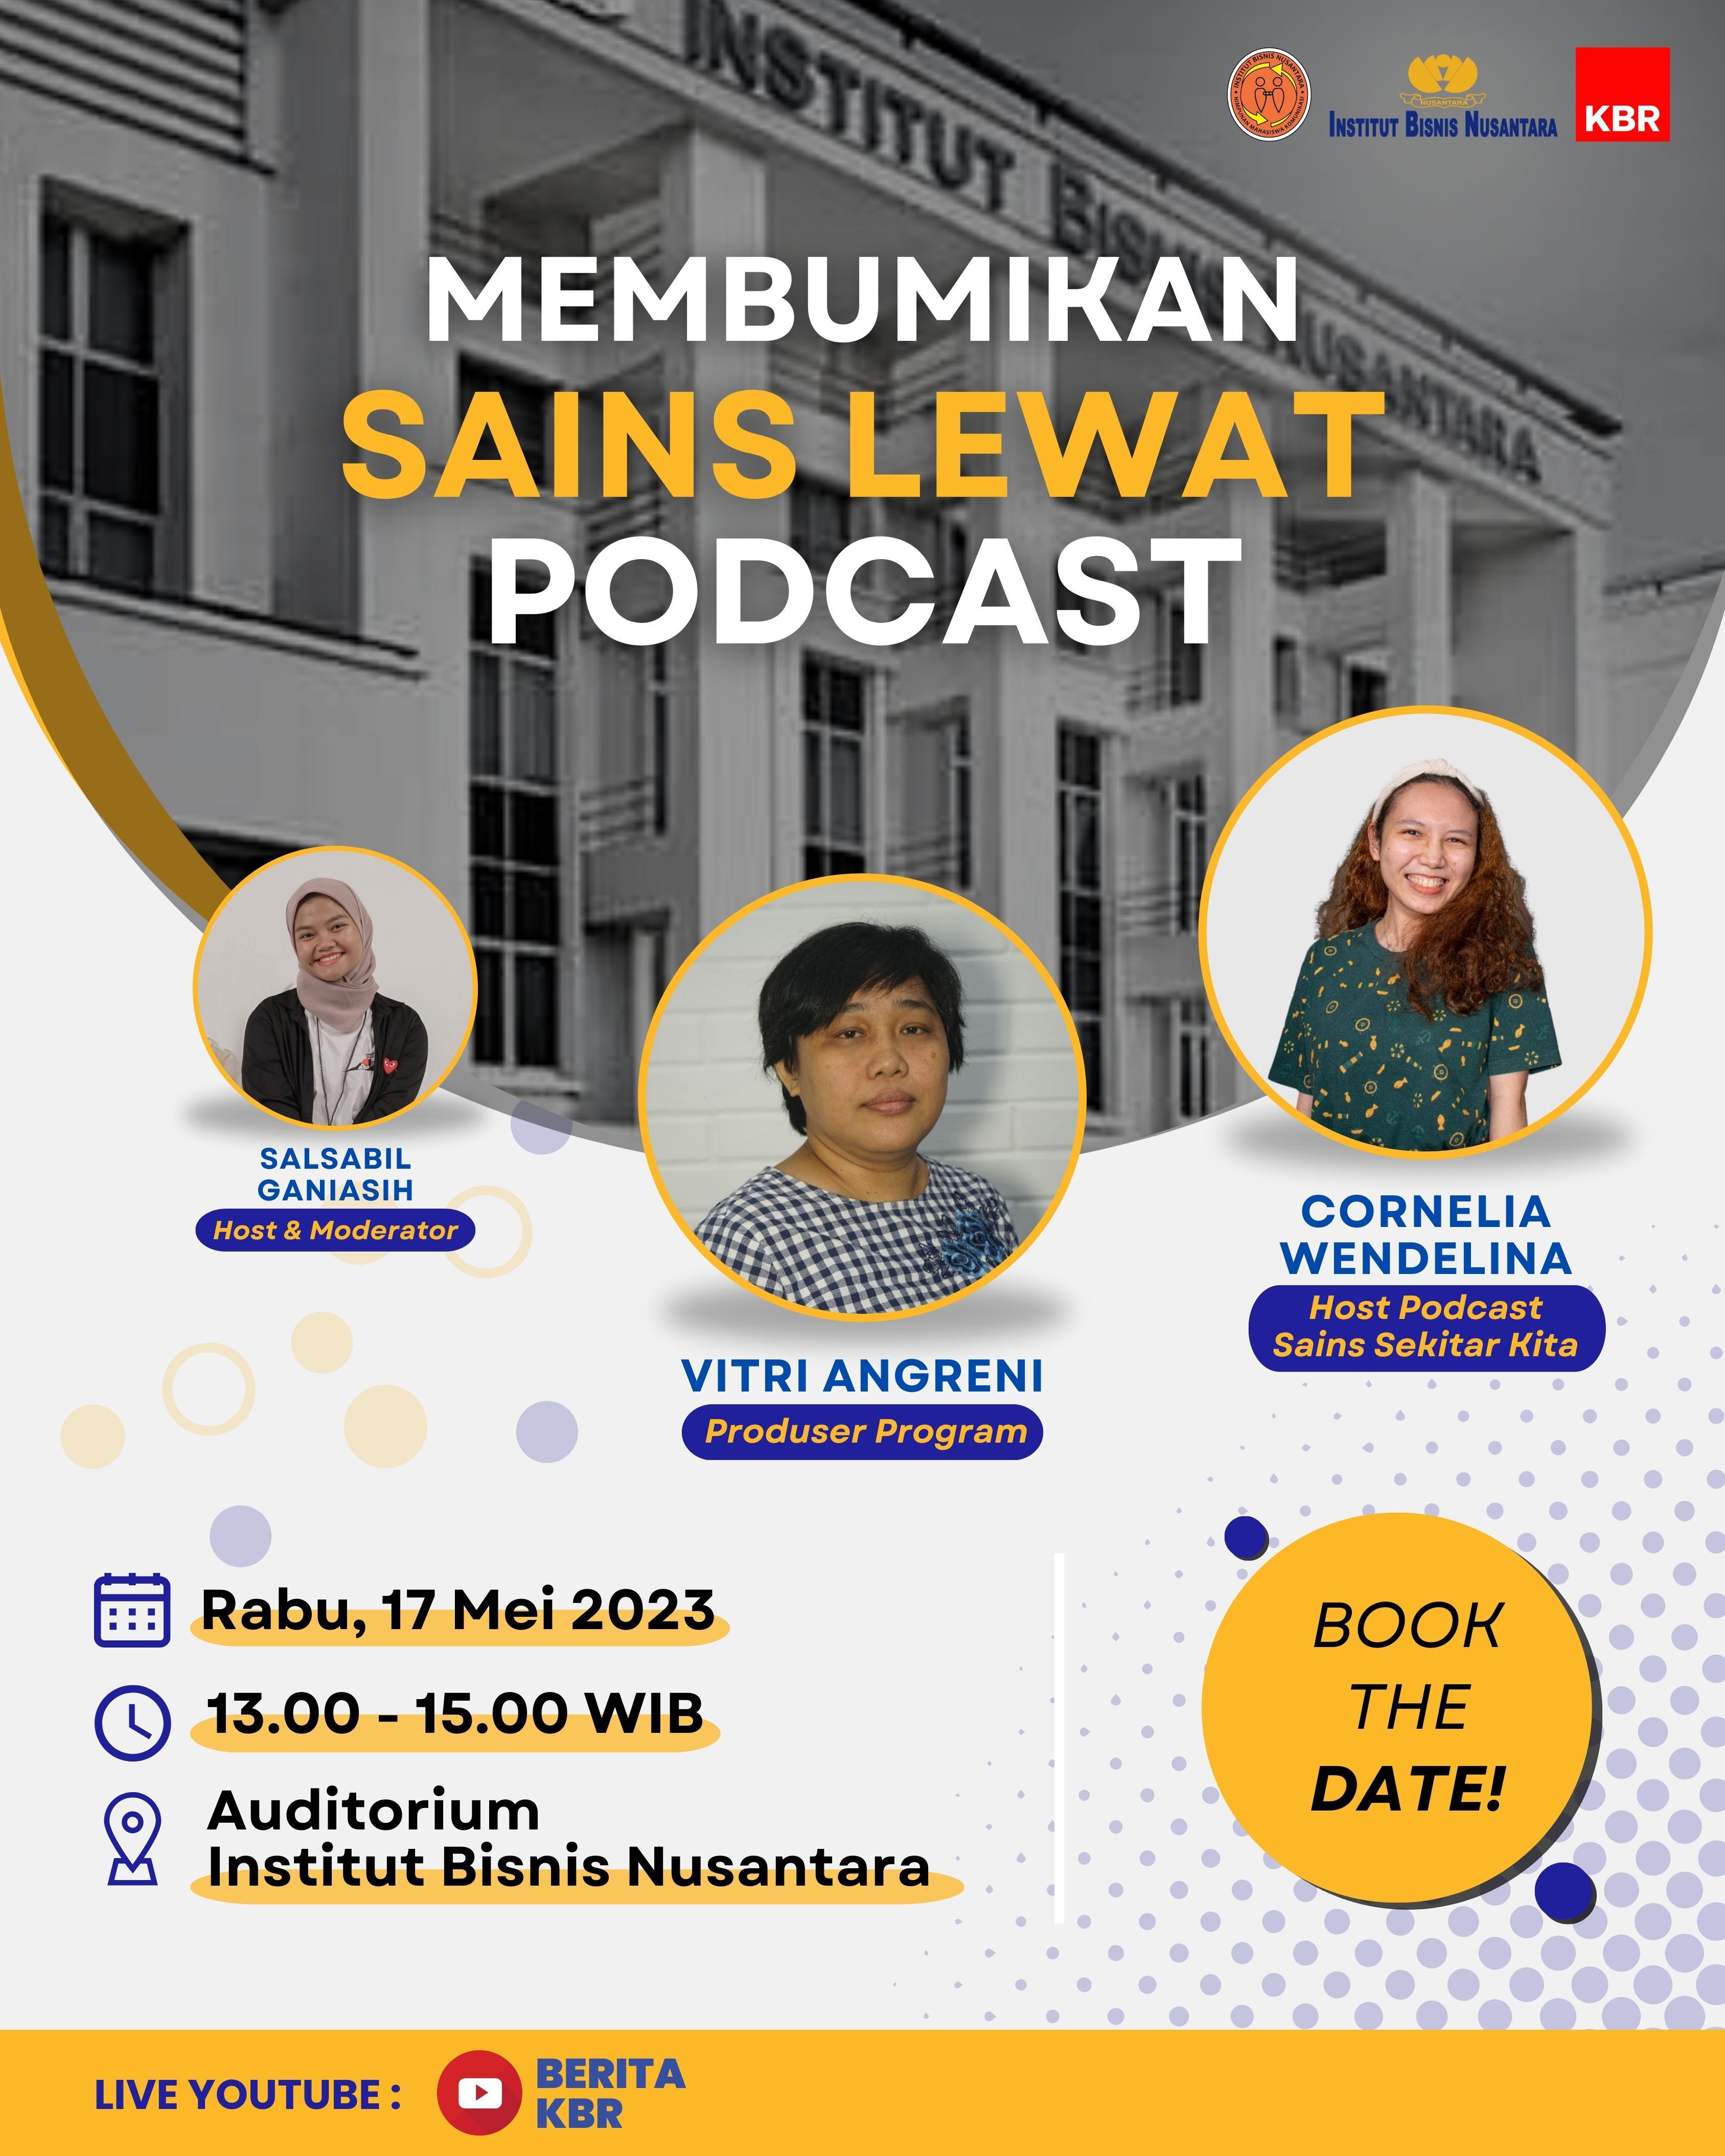 Talkshow P3K bersama Institut Bisnis Nusantara